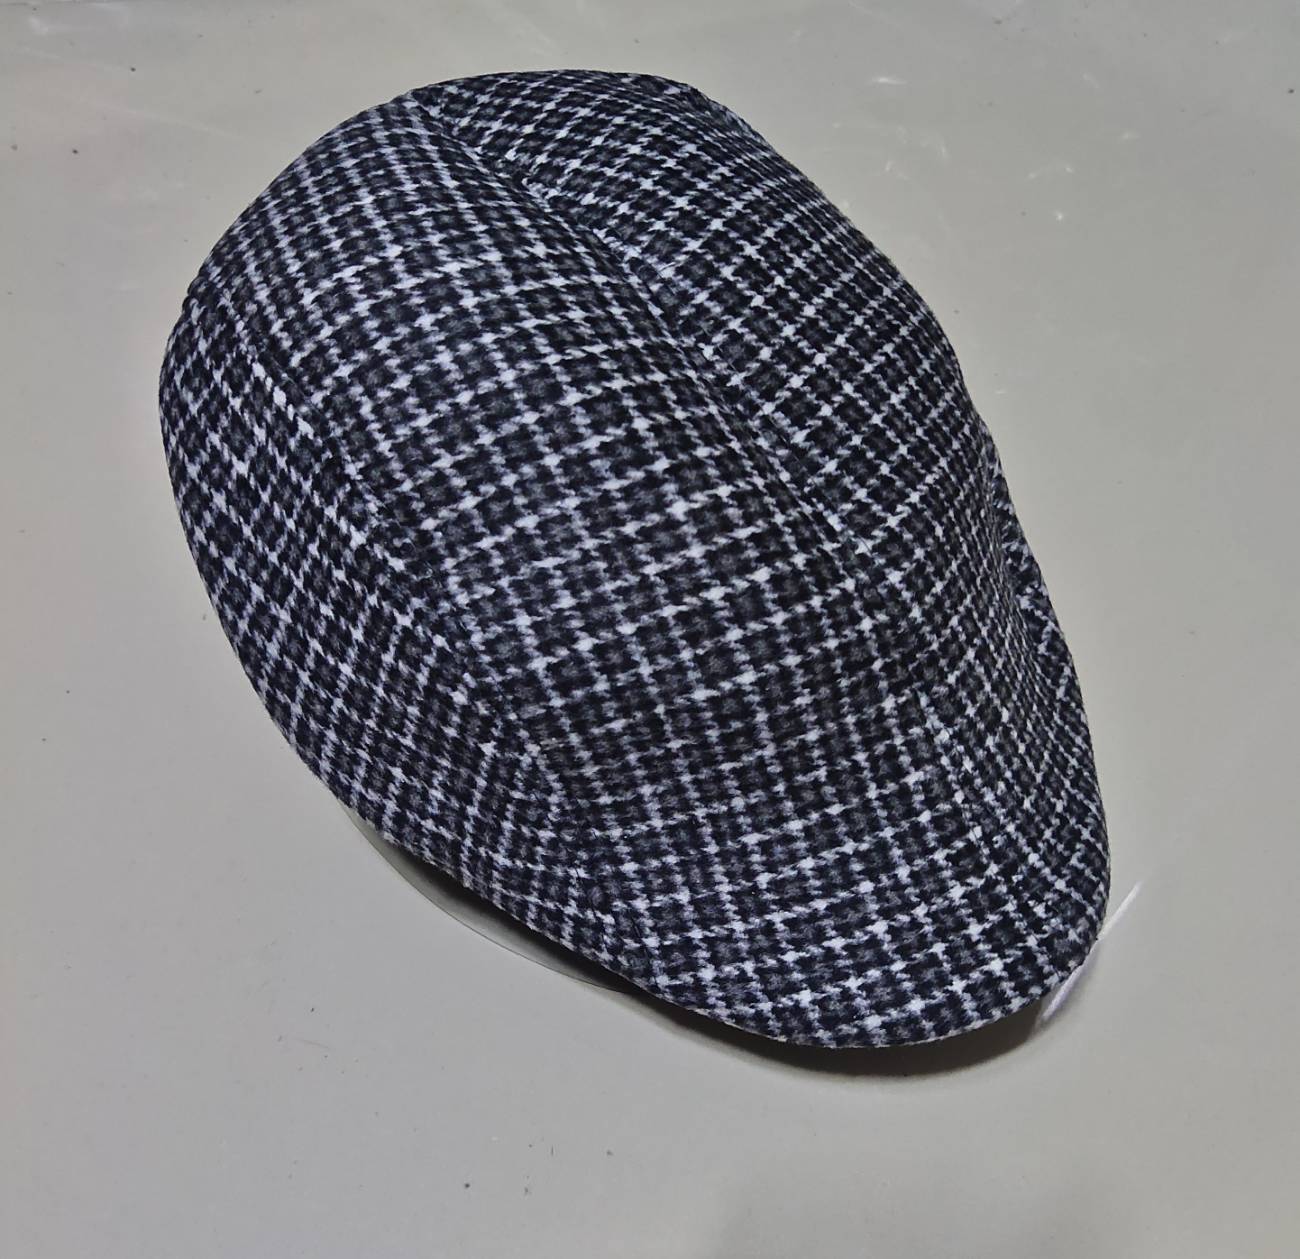 หมวกเบเร่ต์ชาย หมวกวินเทจ หมวกย้อนยุค flat cap ส่งจากไทย?? แจ้งขนาดศีรษะทางแชทด้วยนะคะ